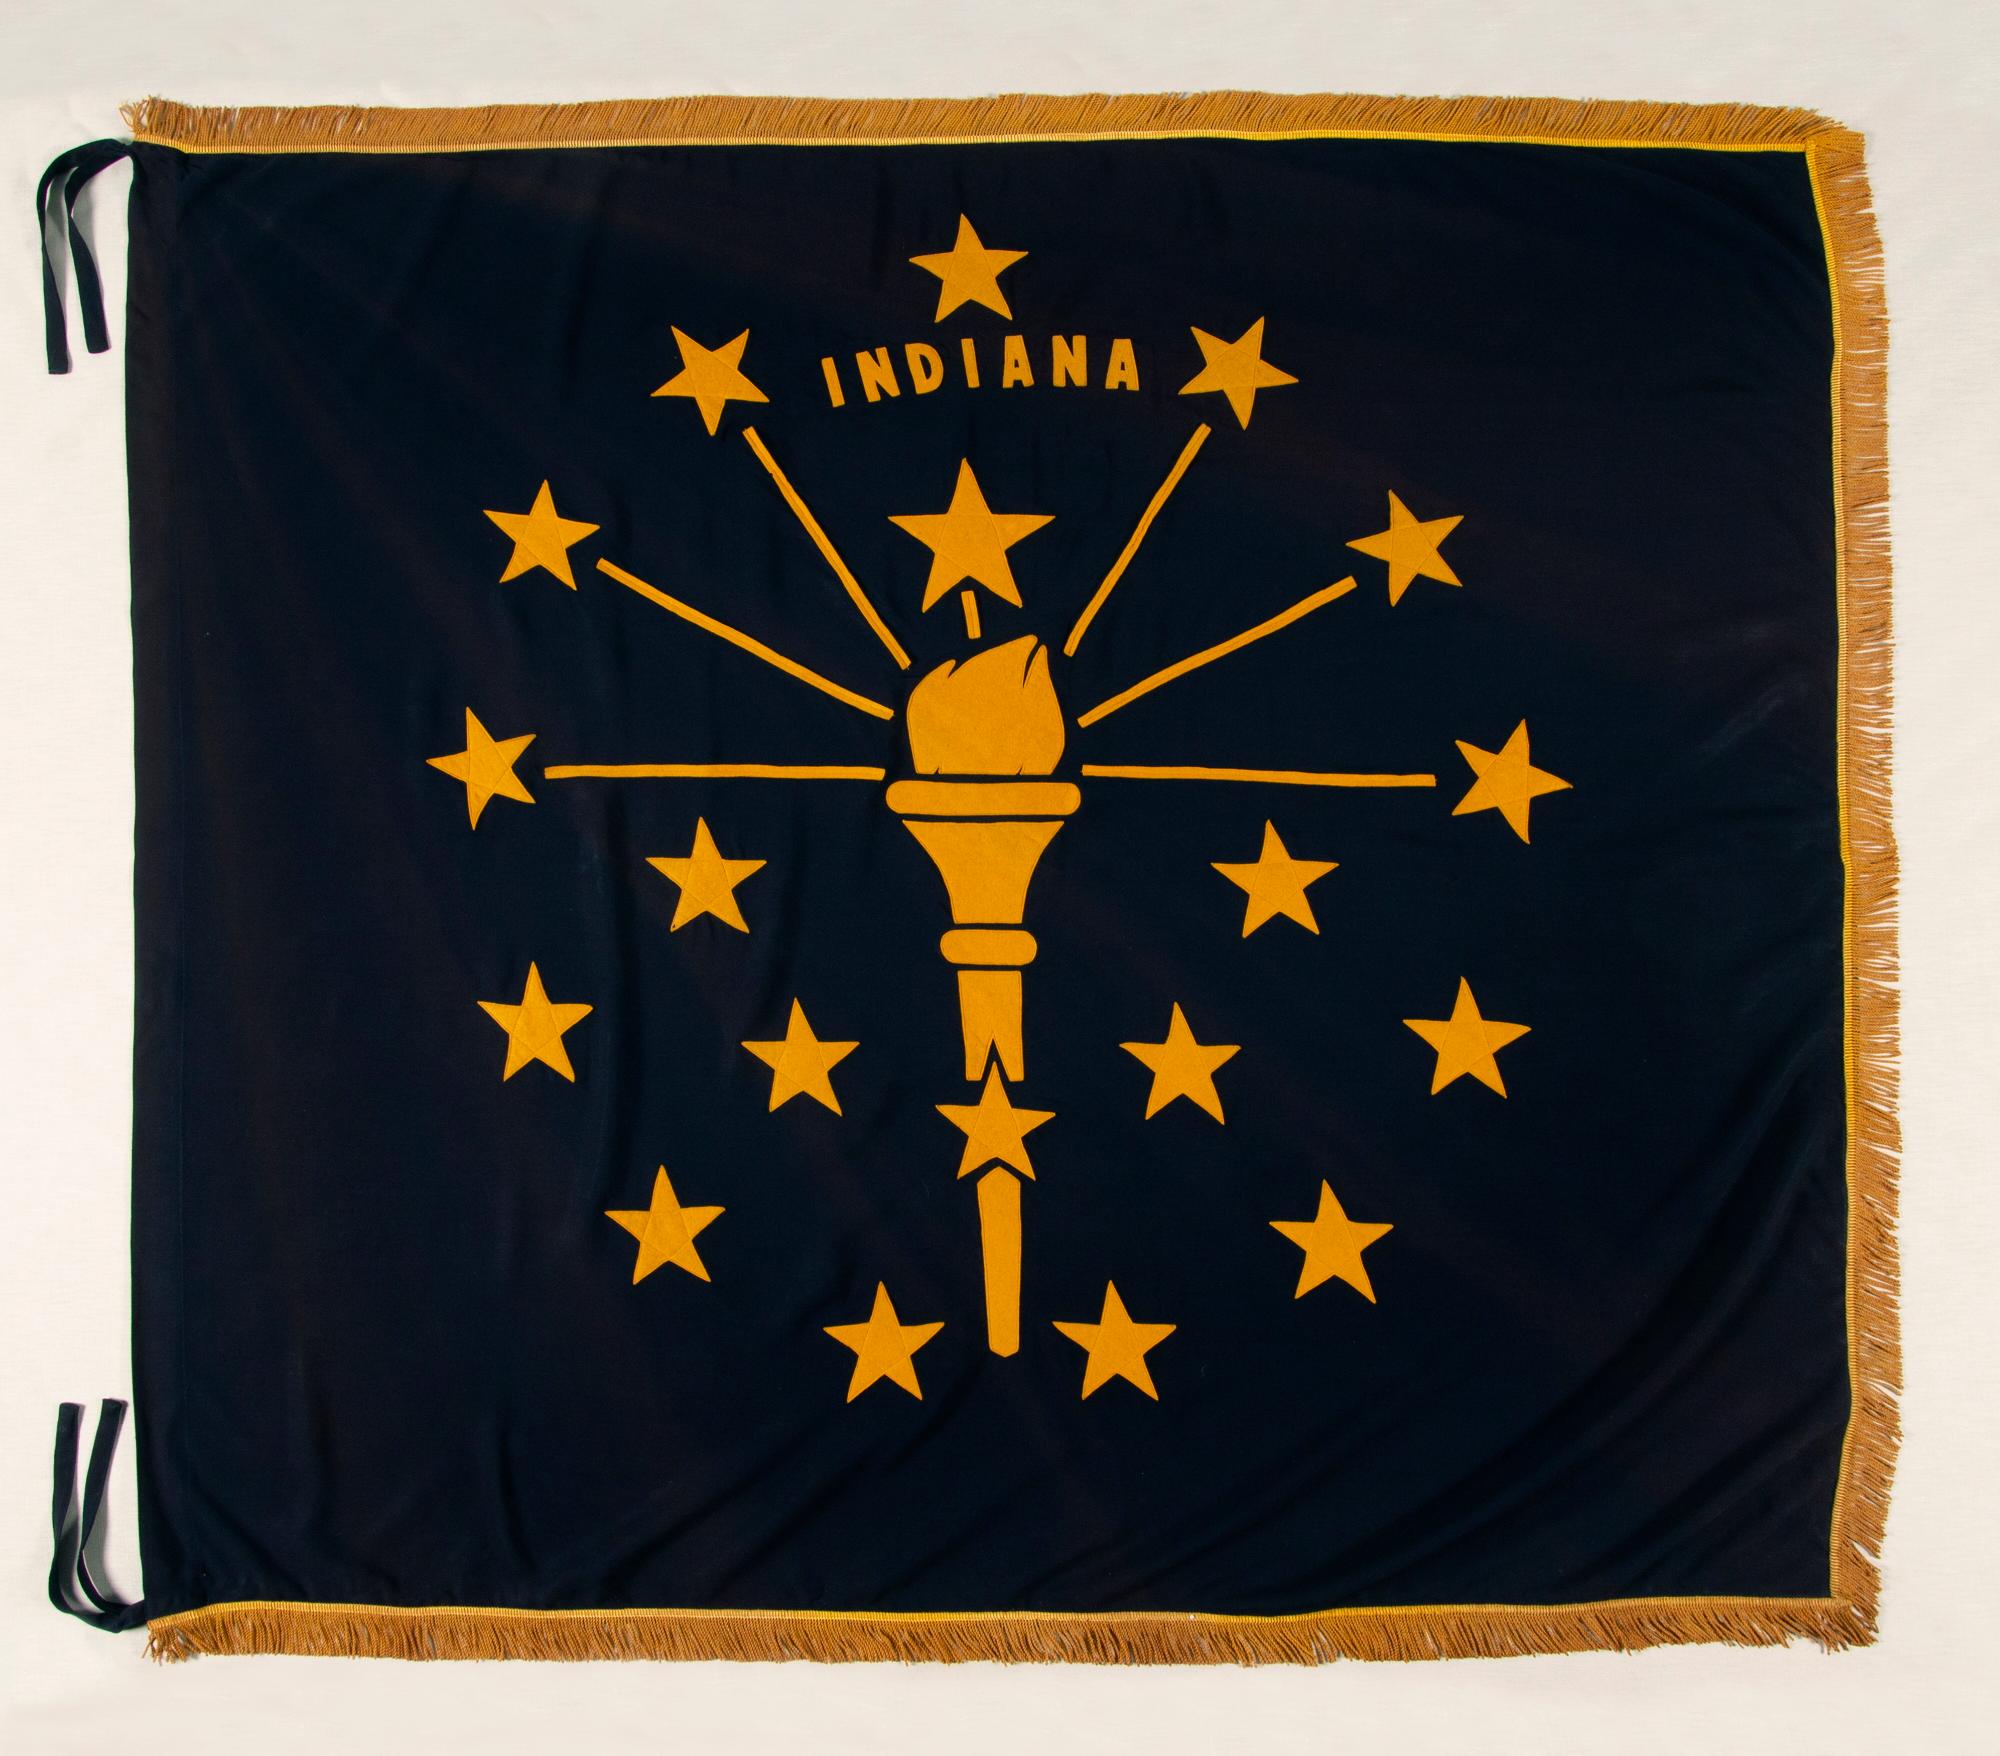 Drapeau de l'État de l'Indiana avec des proportions carrées, un dispositif décalé et une frange dorée, circa 1930-1955 :

Bien que la plupart des États-Unis aient rejoint l'Union aux XVIIIe et XIXe siècles, beaucoup n'ont pas eu de drapeau d'État